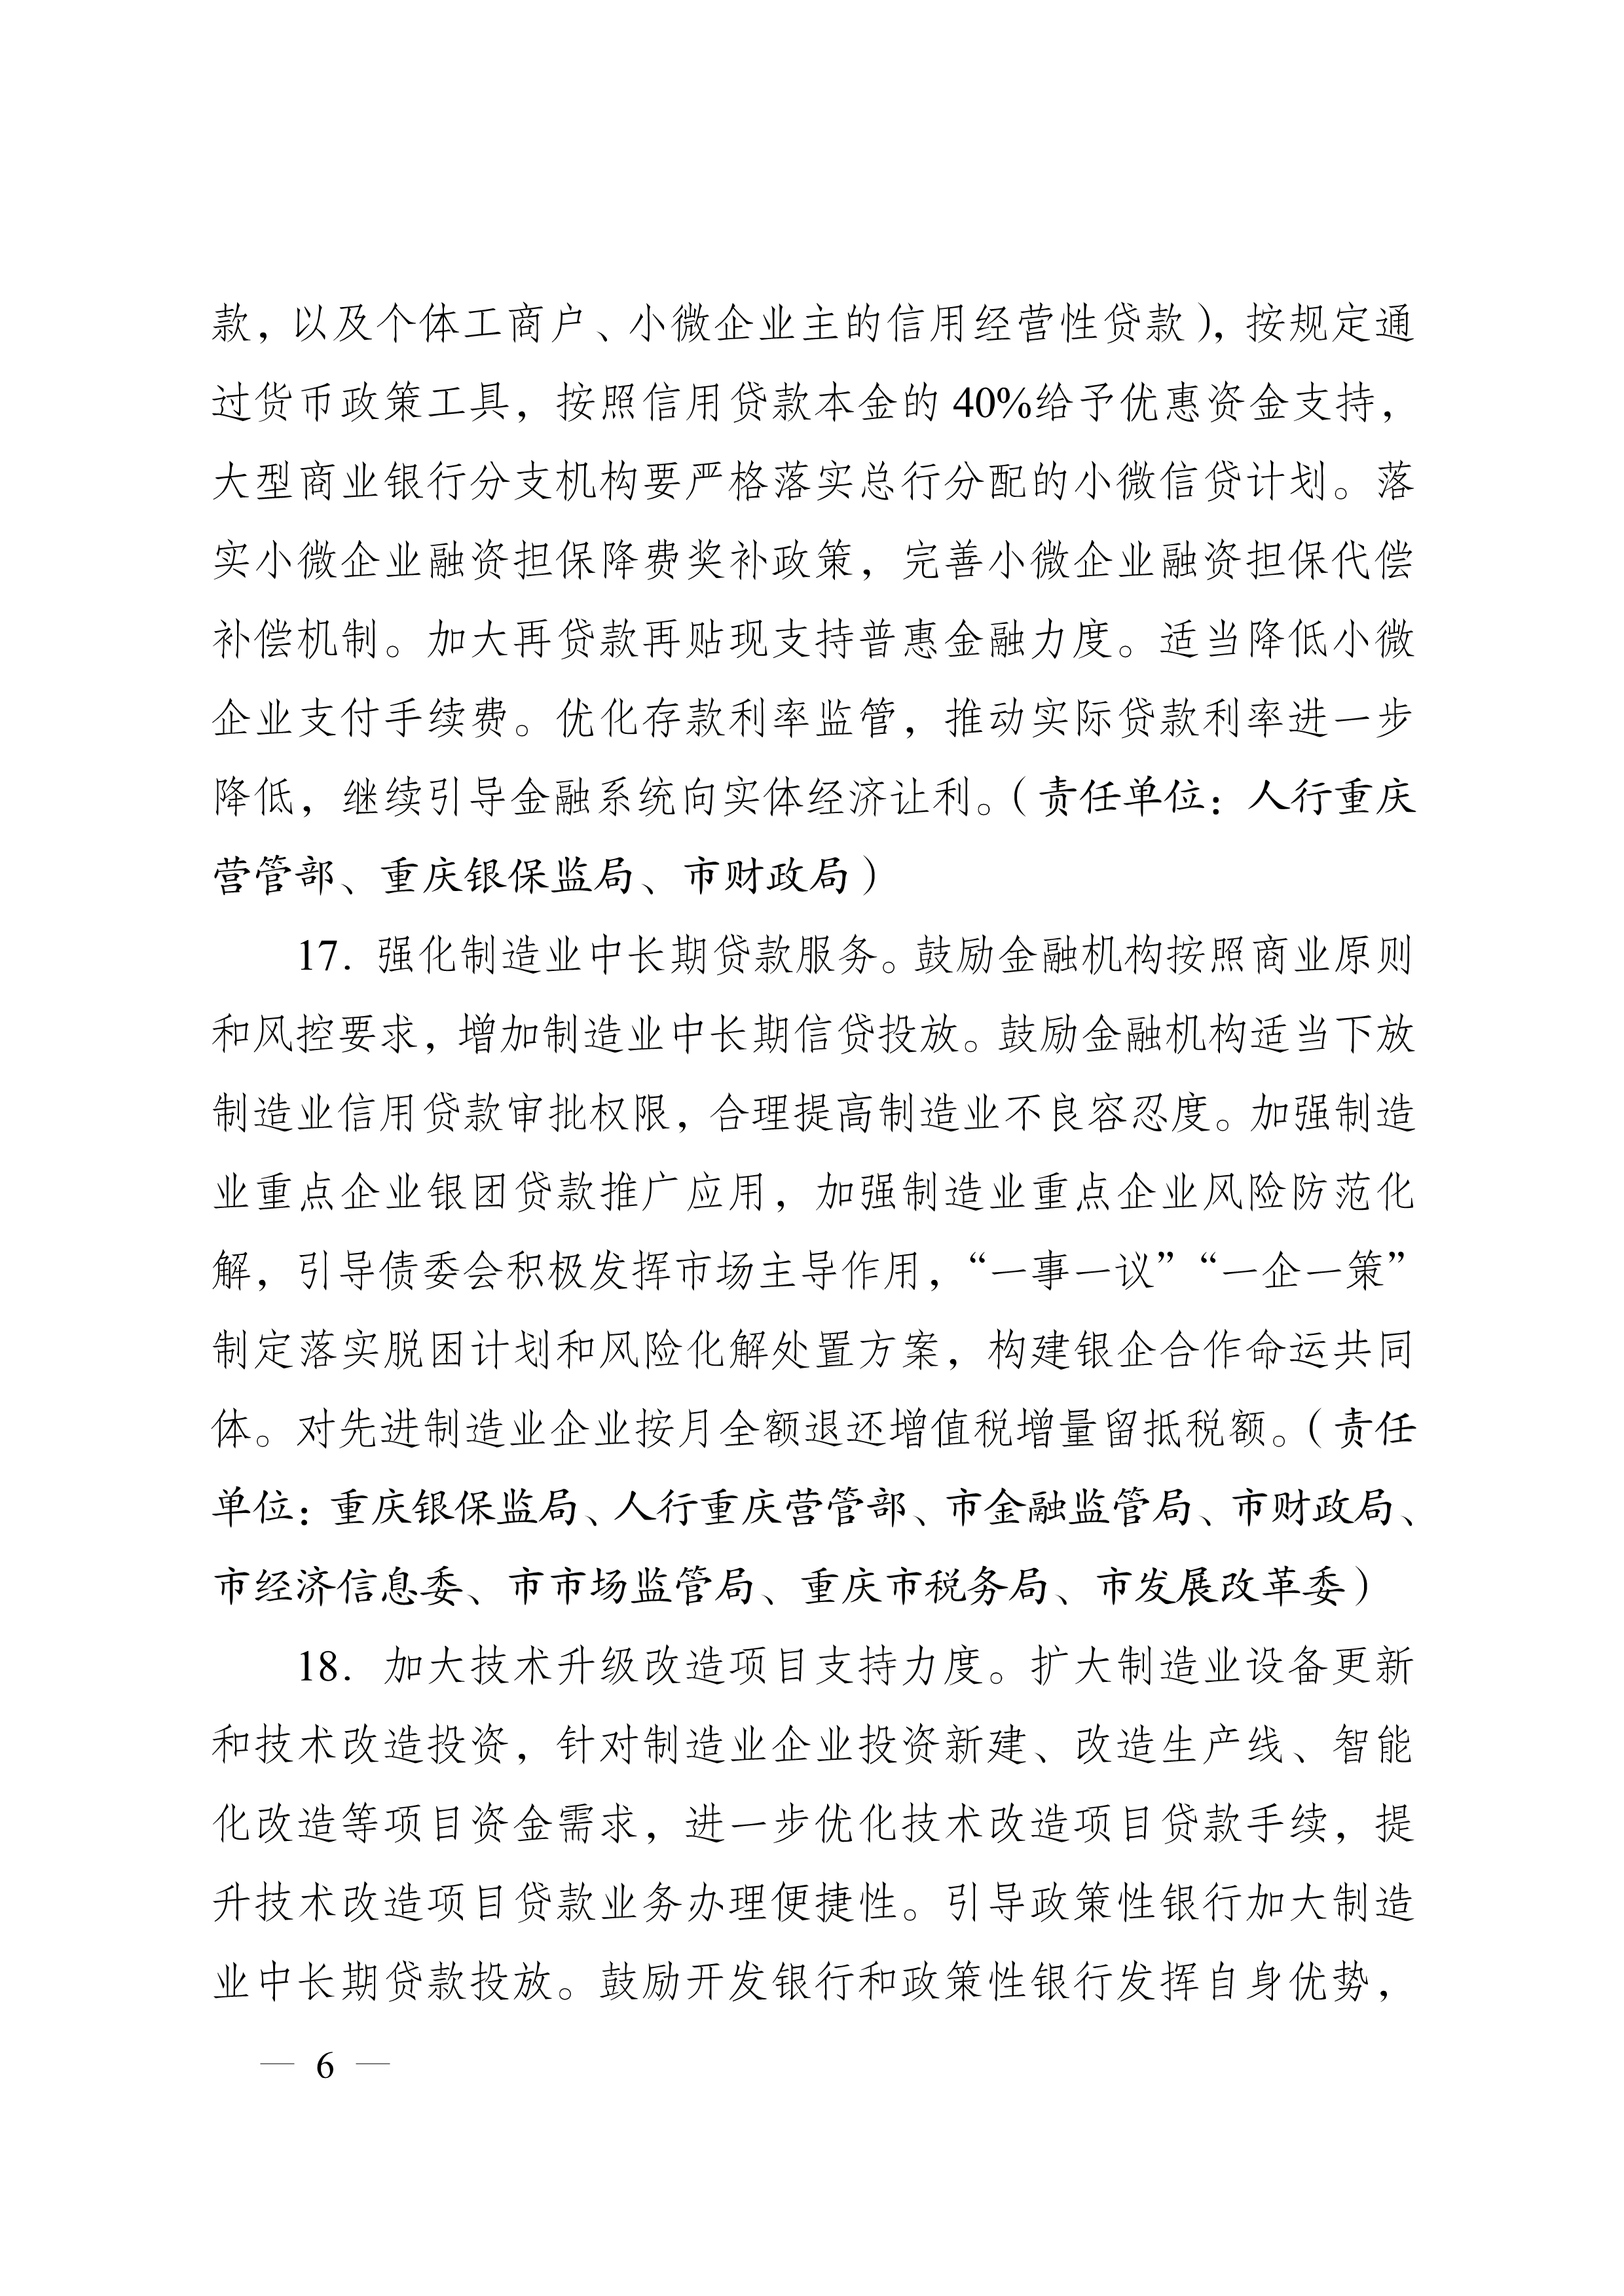 重庆市人民政府办公厅关于促进生产经营稳定发展若干措施的通知(图6)